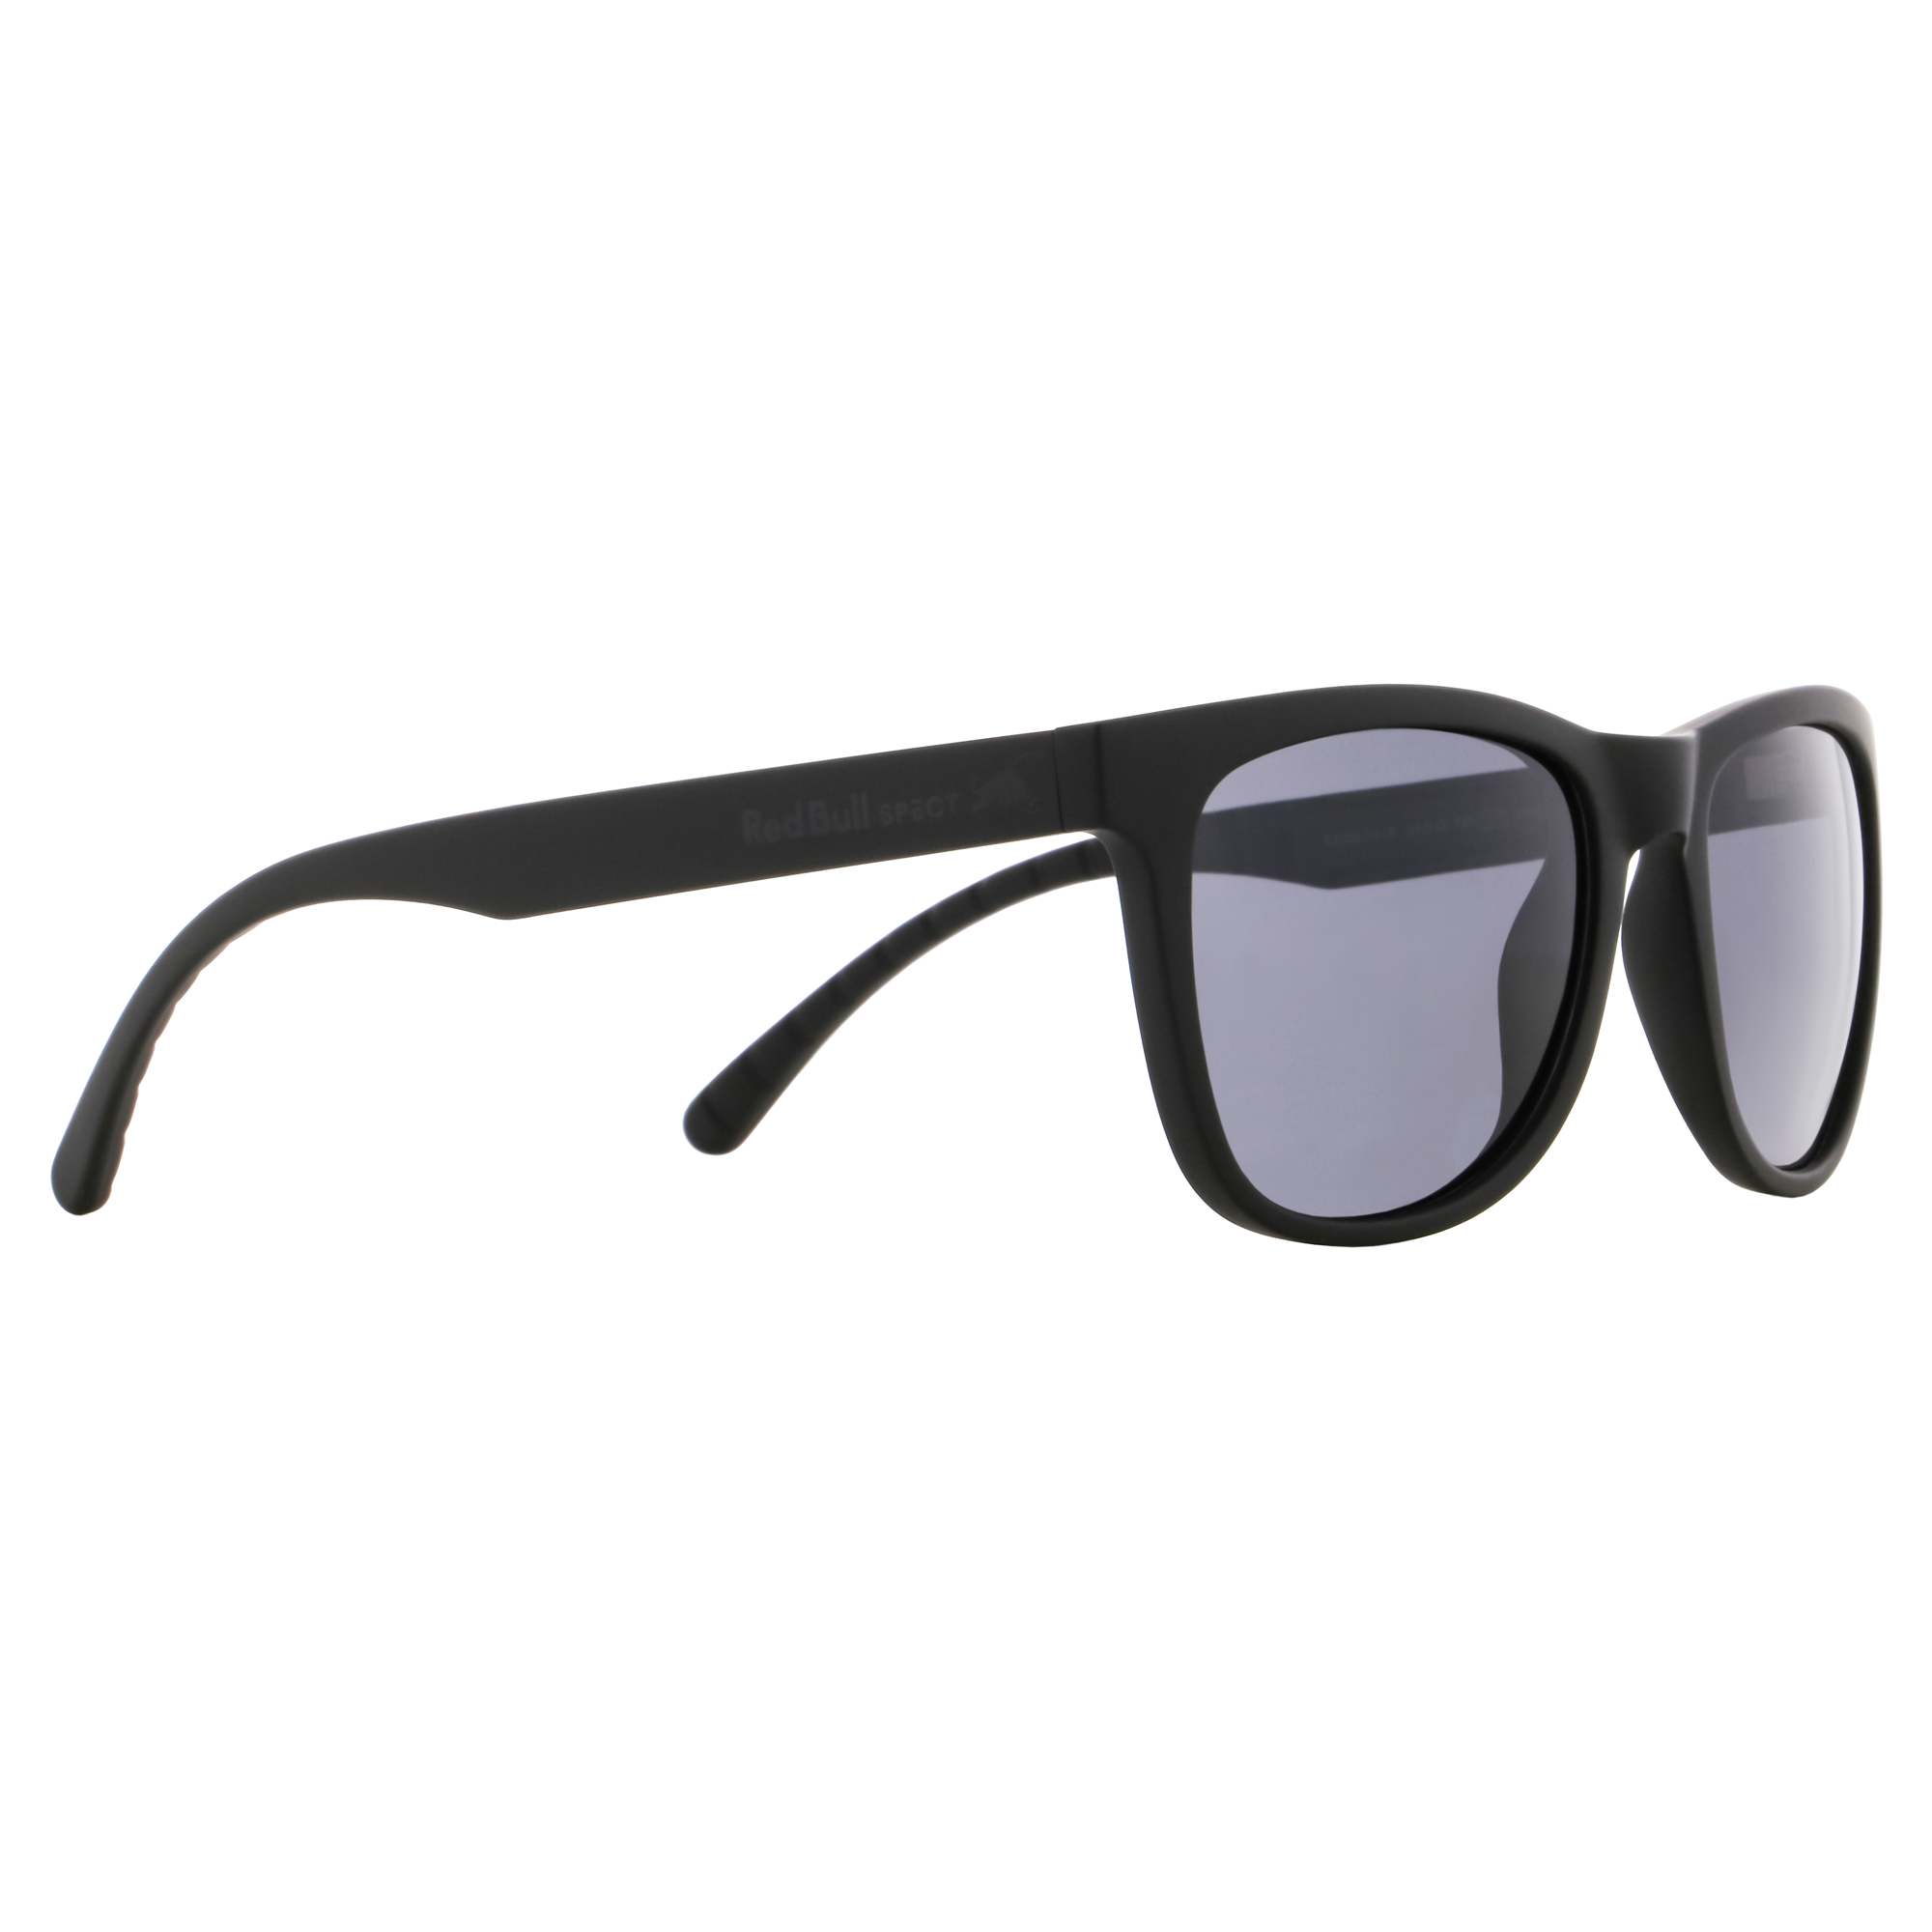 Sunglasses ECOS-001P